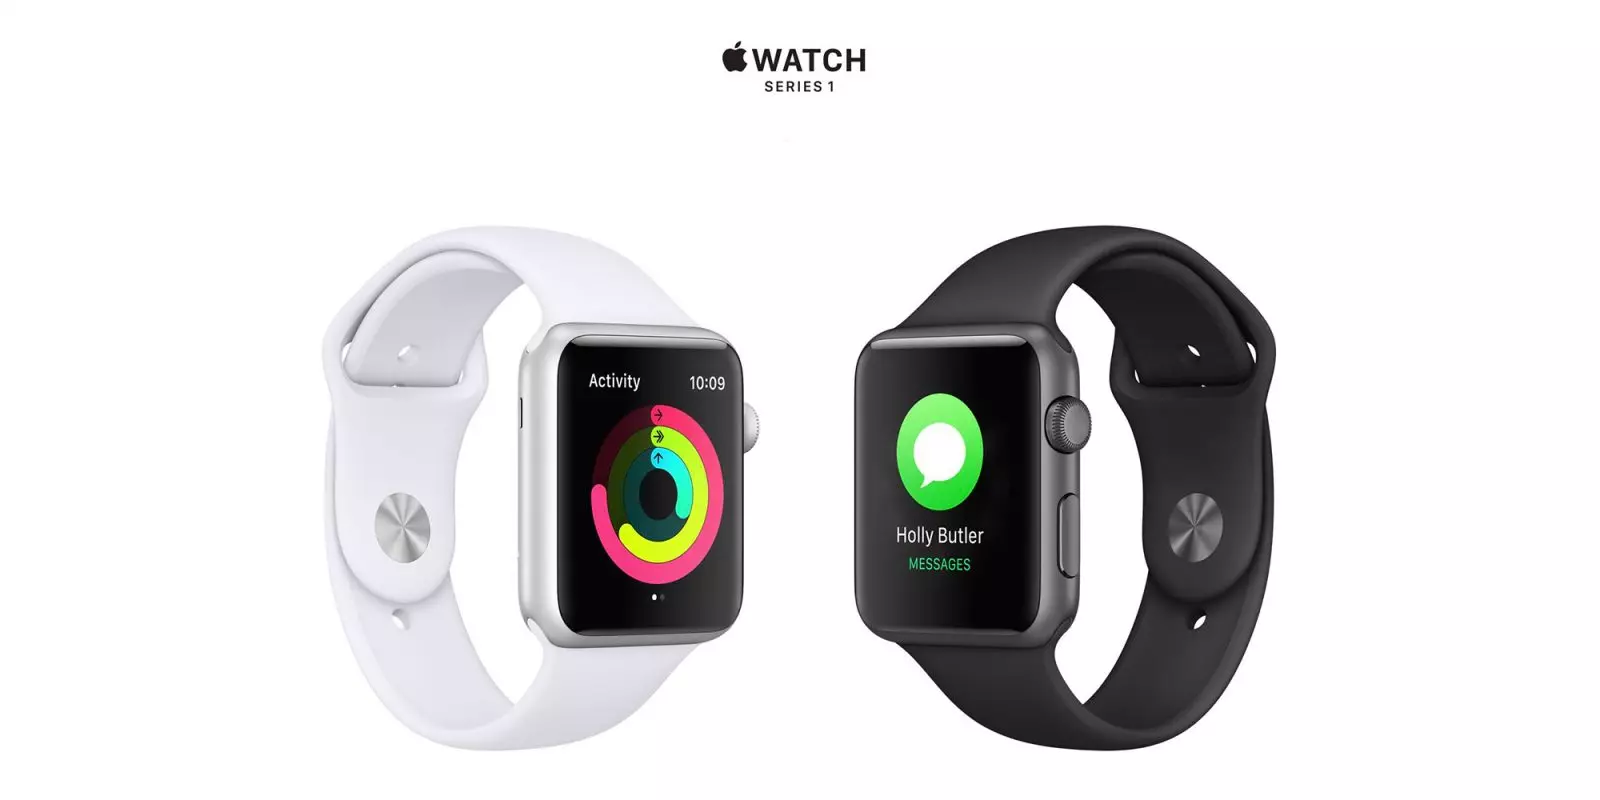 Apple Watch S1 mở đầu công nghệ đồng hồ thông minh đa tính năng